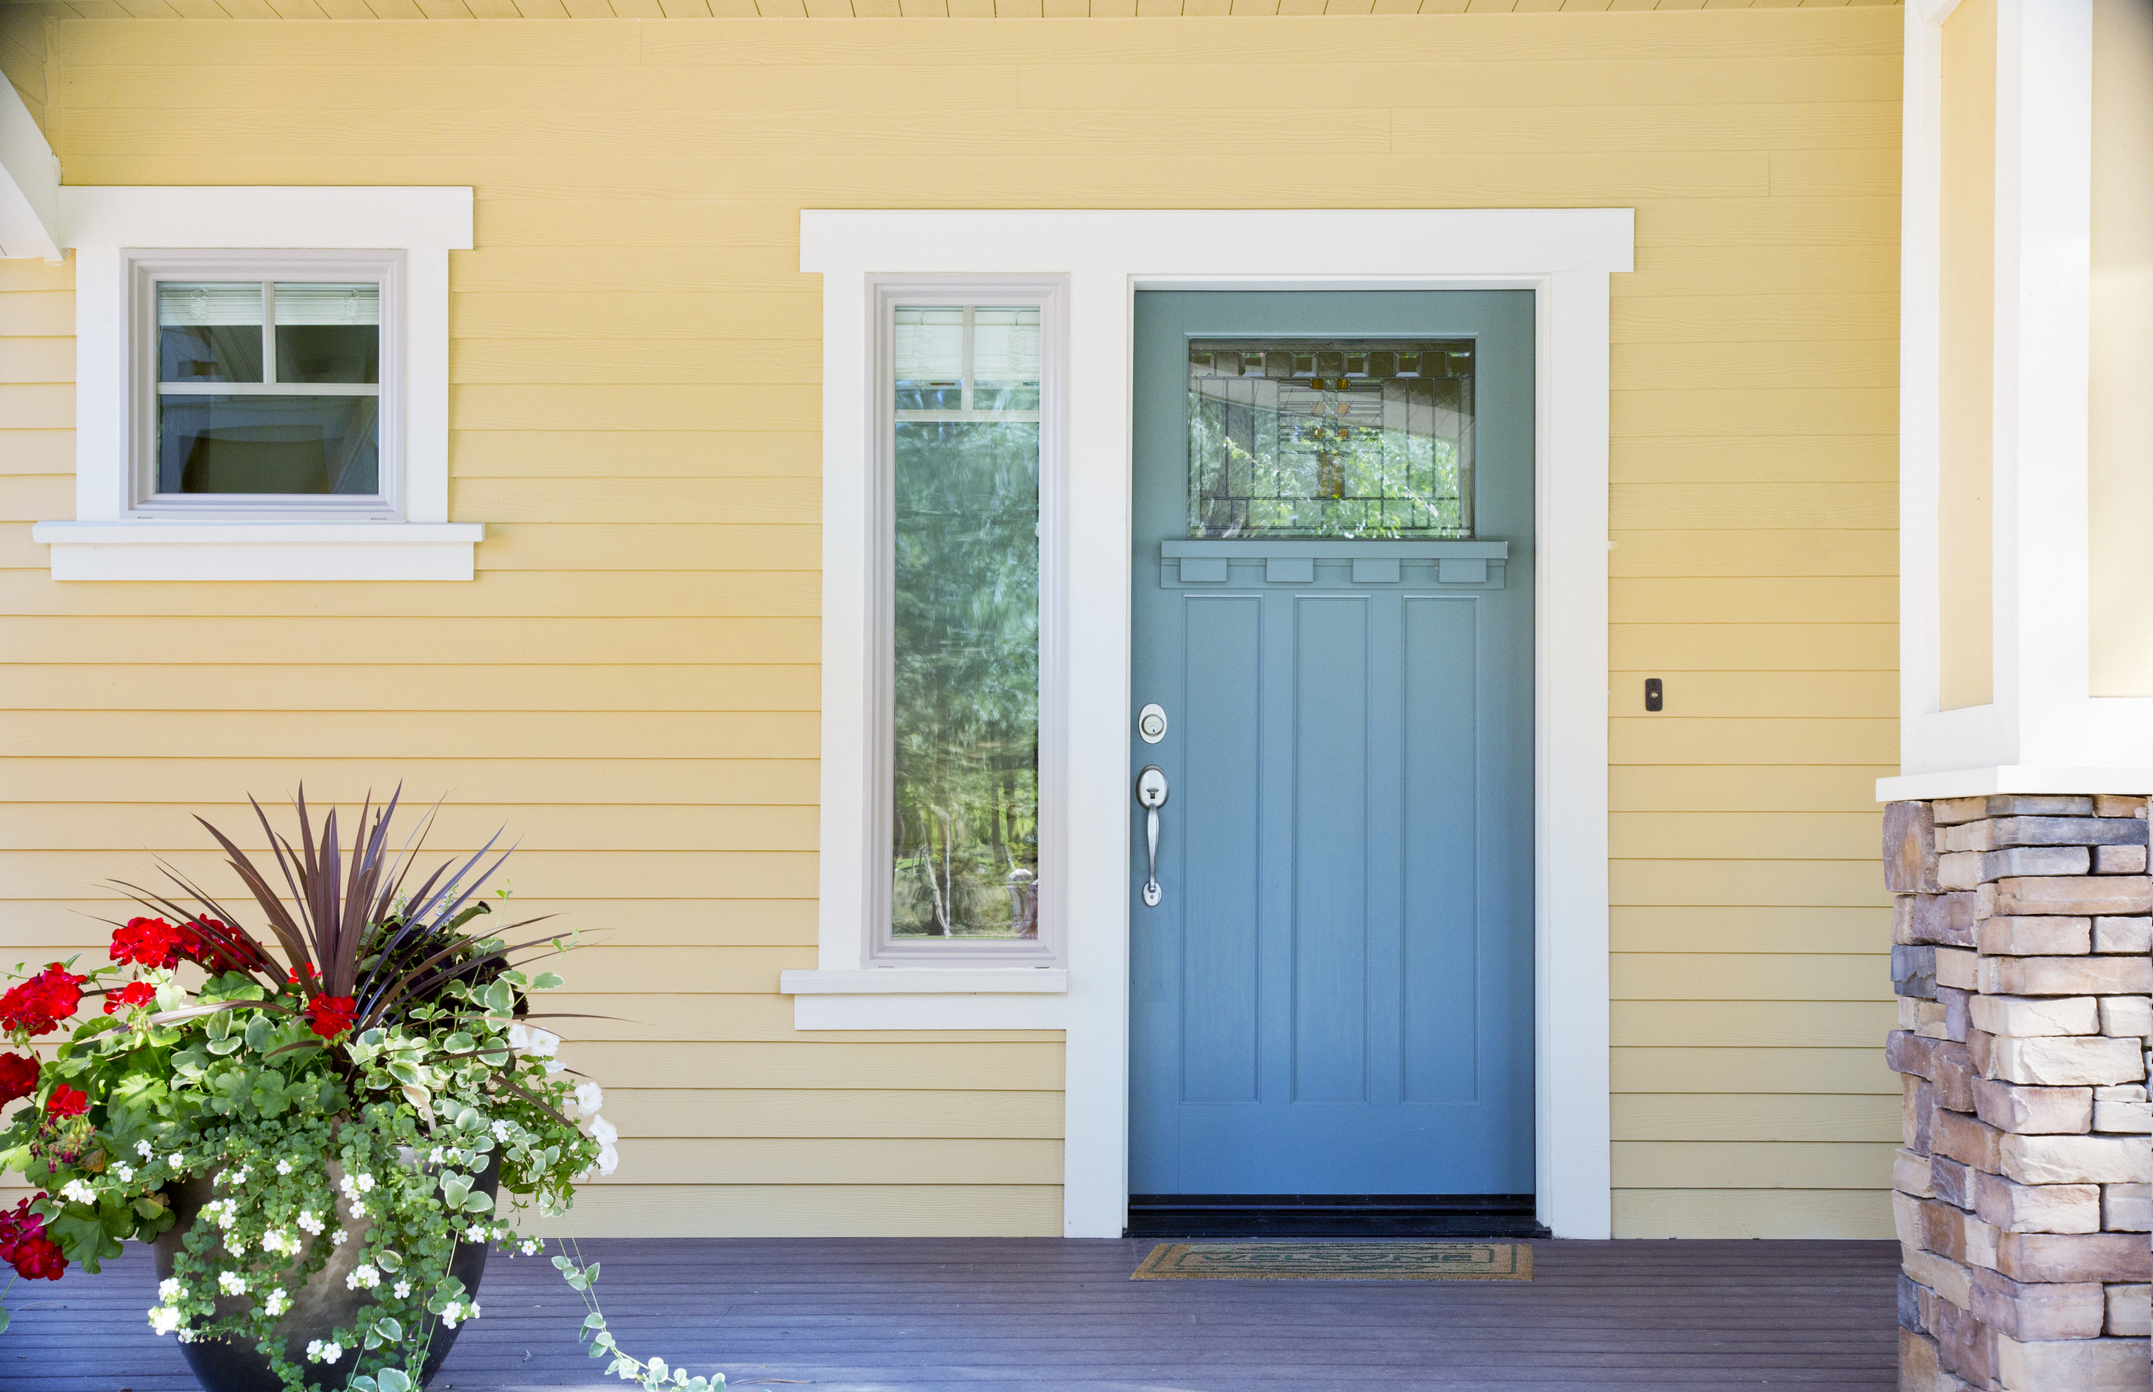 Fachada de casa com paredes em amarelo. As janelas e portas estão da cor azul e contornos brancos.